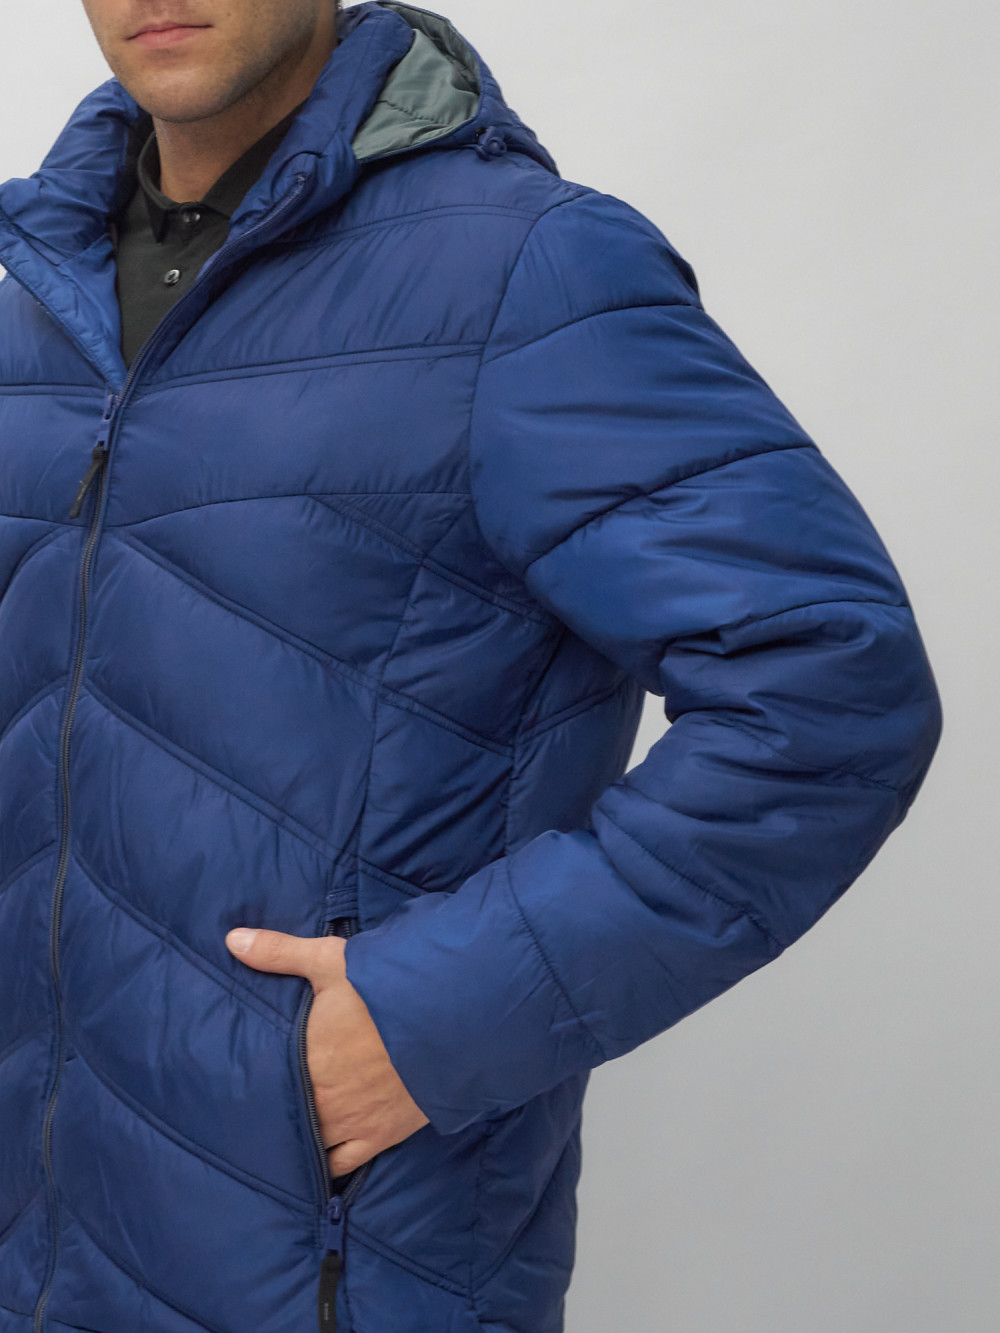 Купить куртку мужскую спортивную оптом от производителя недорого в Москве 62176S 1